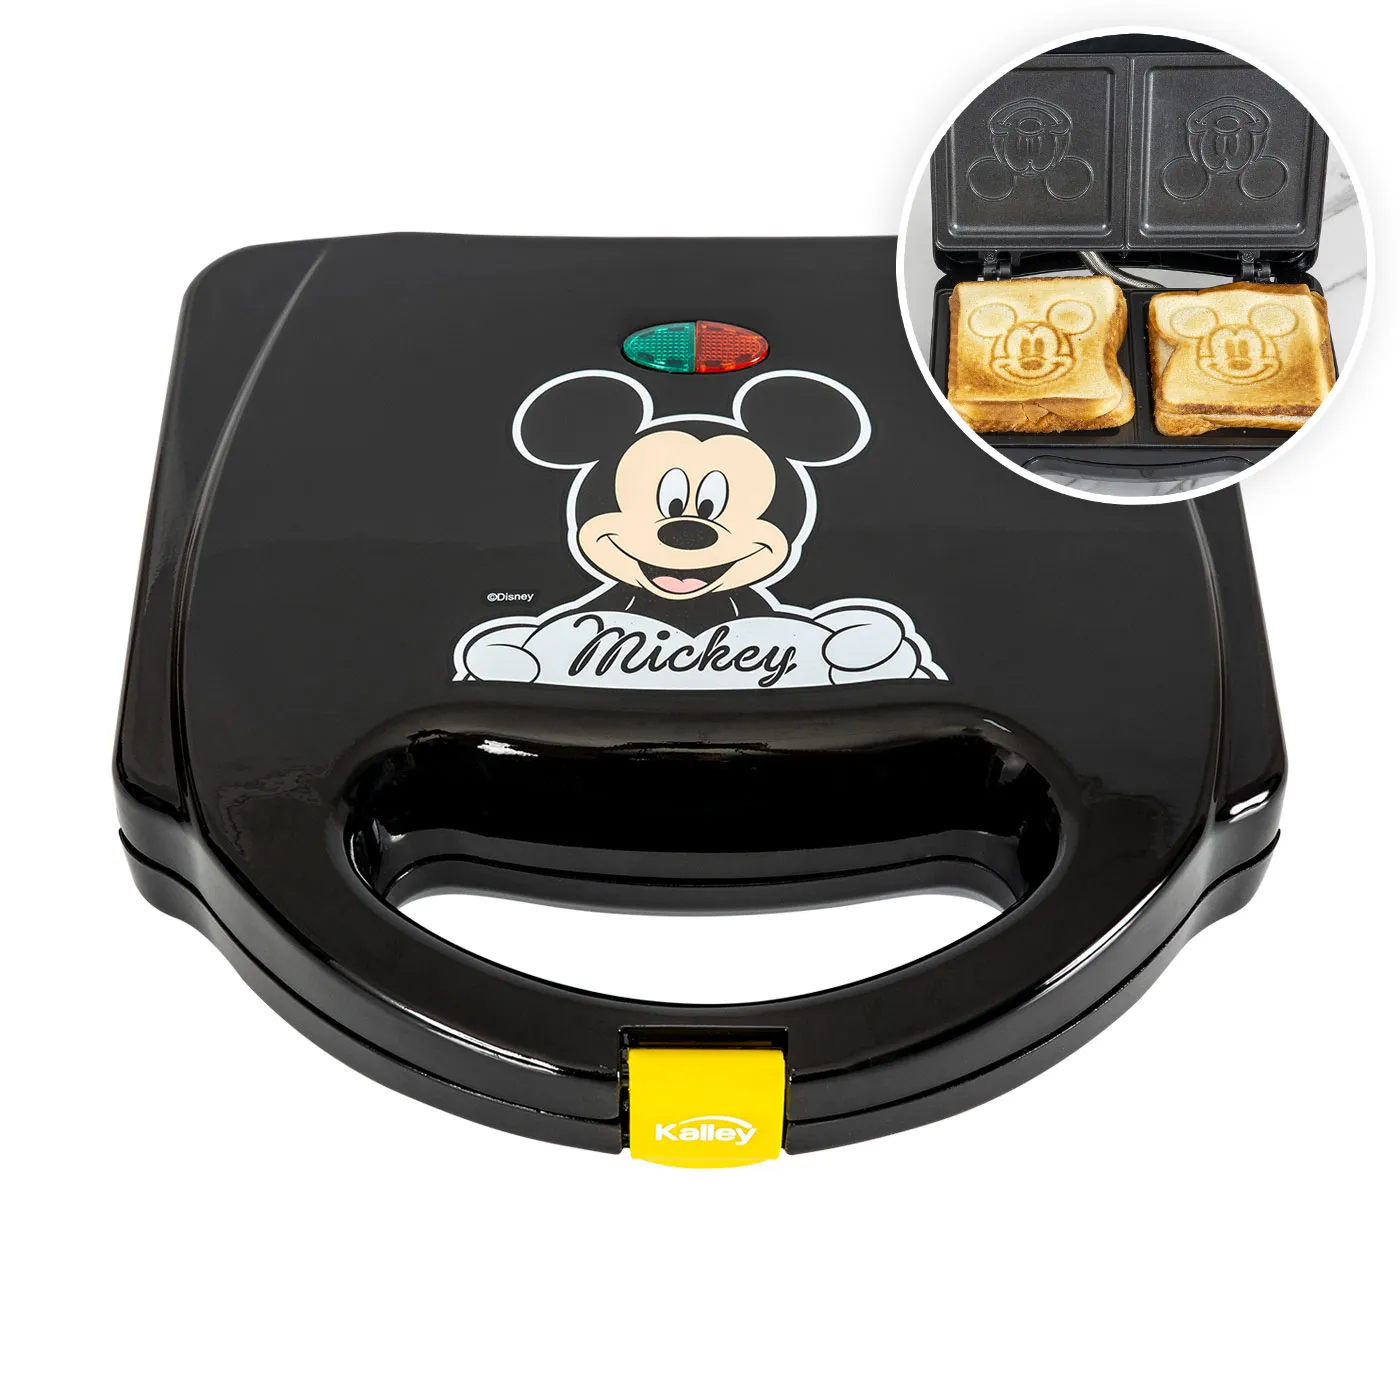 Sanduchera KALLEY Mickey Mouse de Disney K-DSM101N